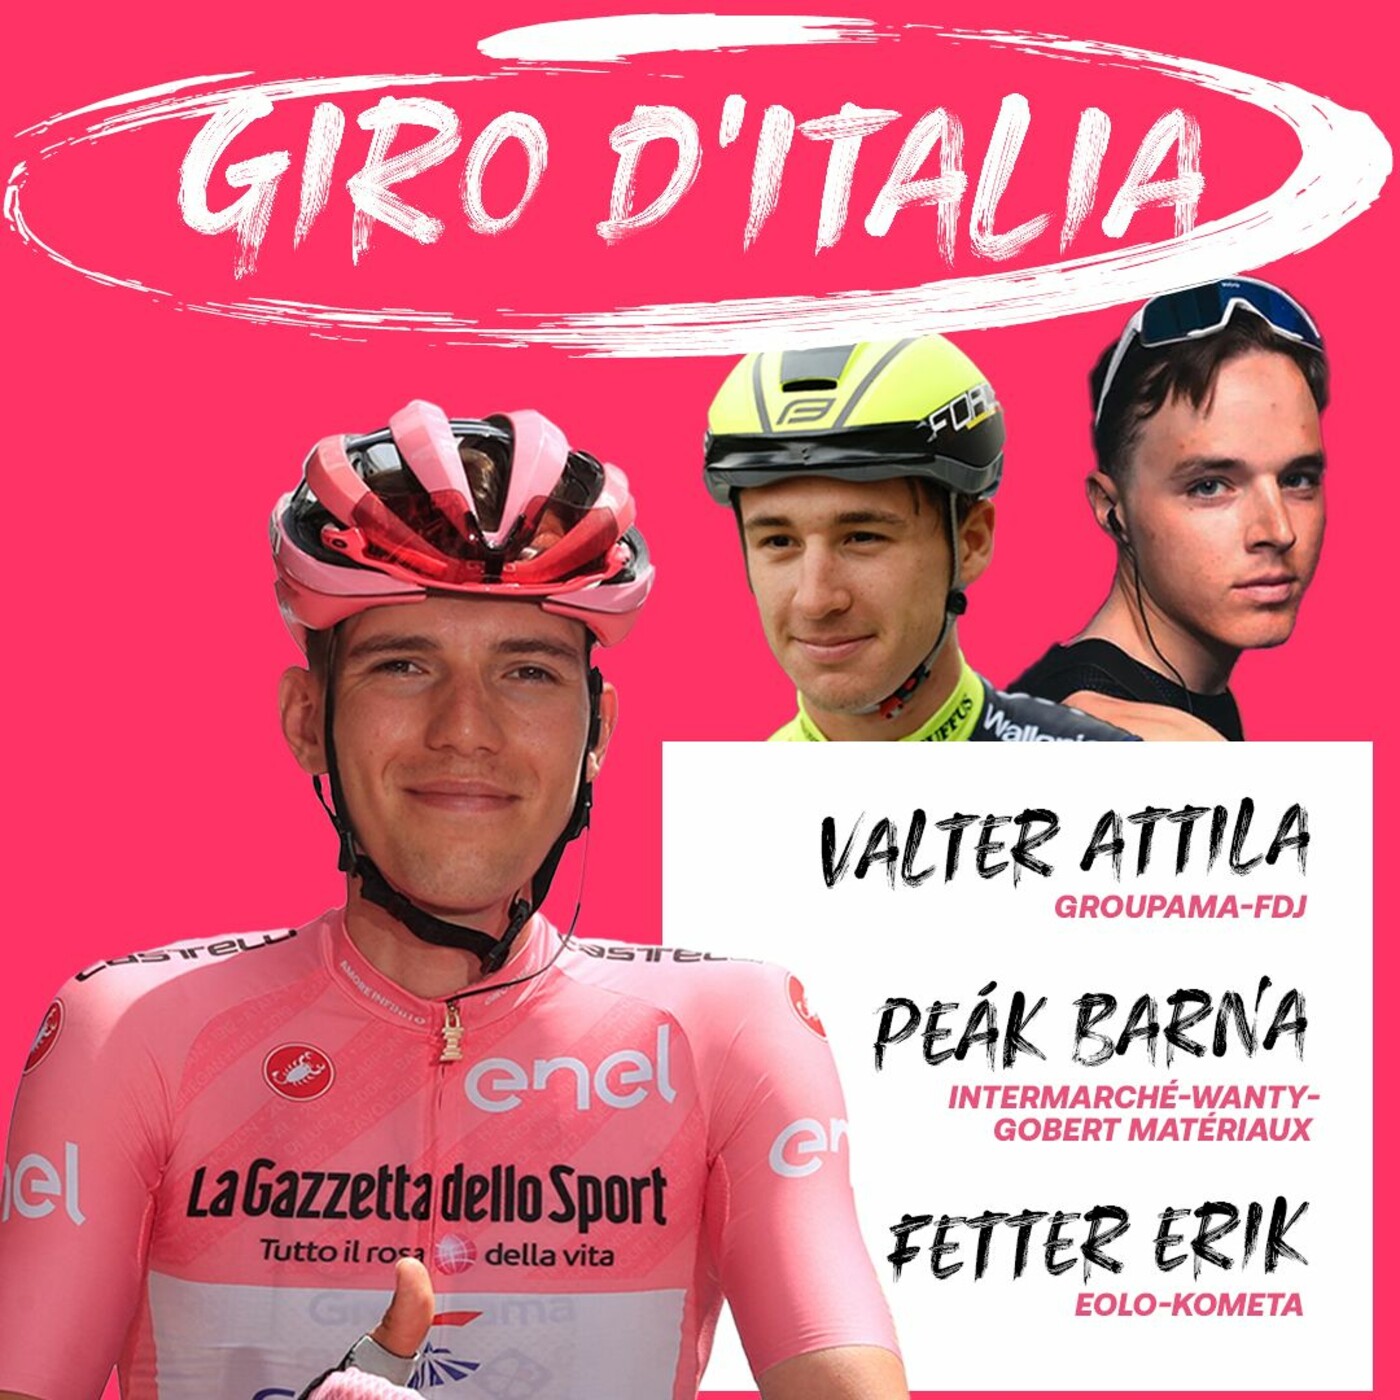 Bodrogi Laci, Valter Ati, a magyar srácok, és Giro sztárjai - ESB podcast(05.03)